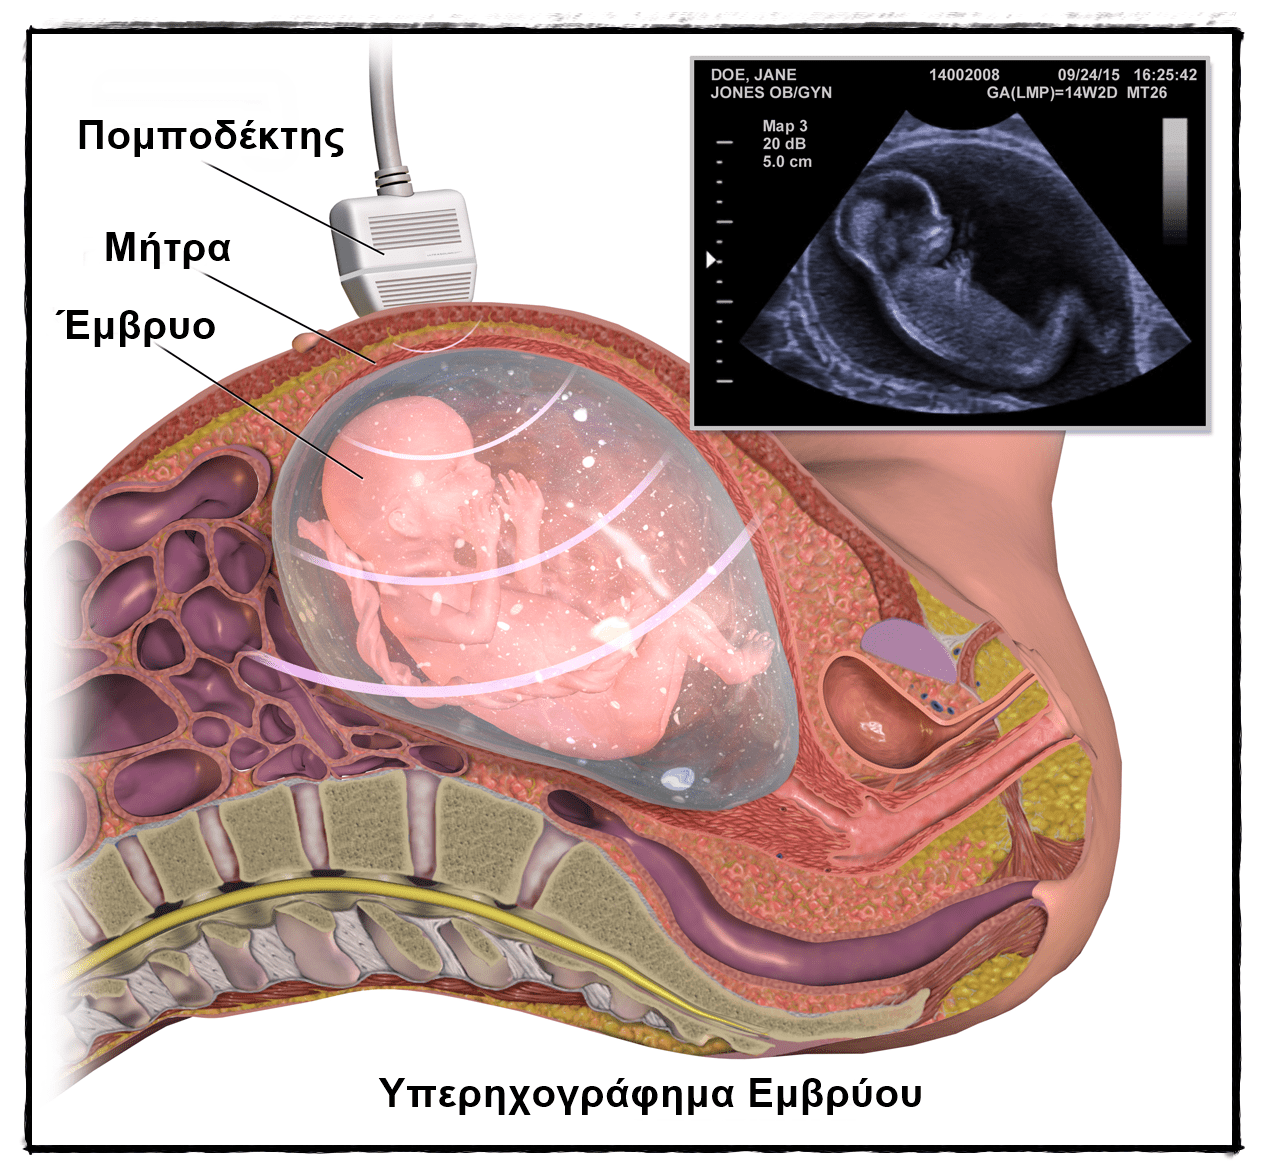 Υπερηχογράφημα Εμβρύου